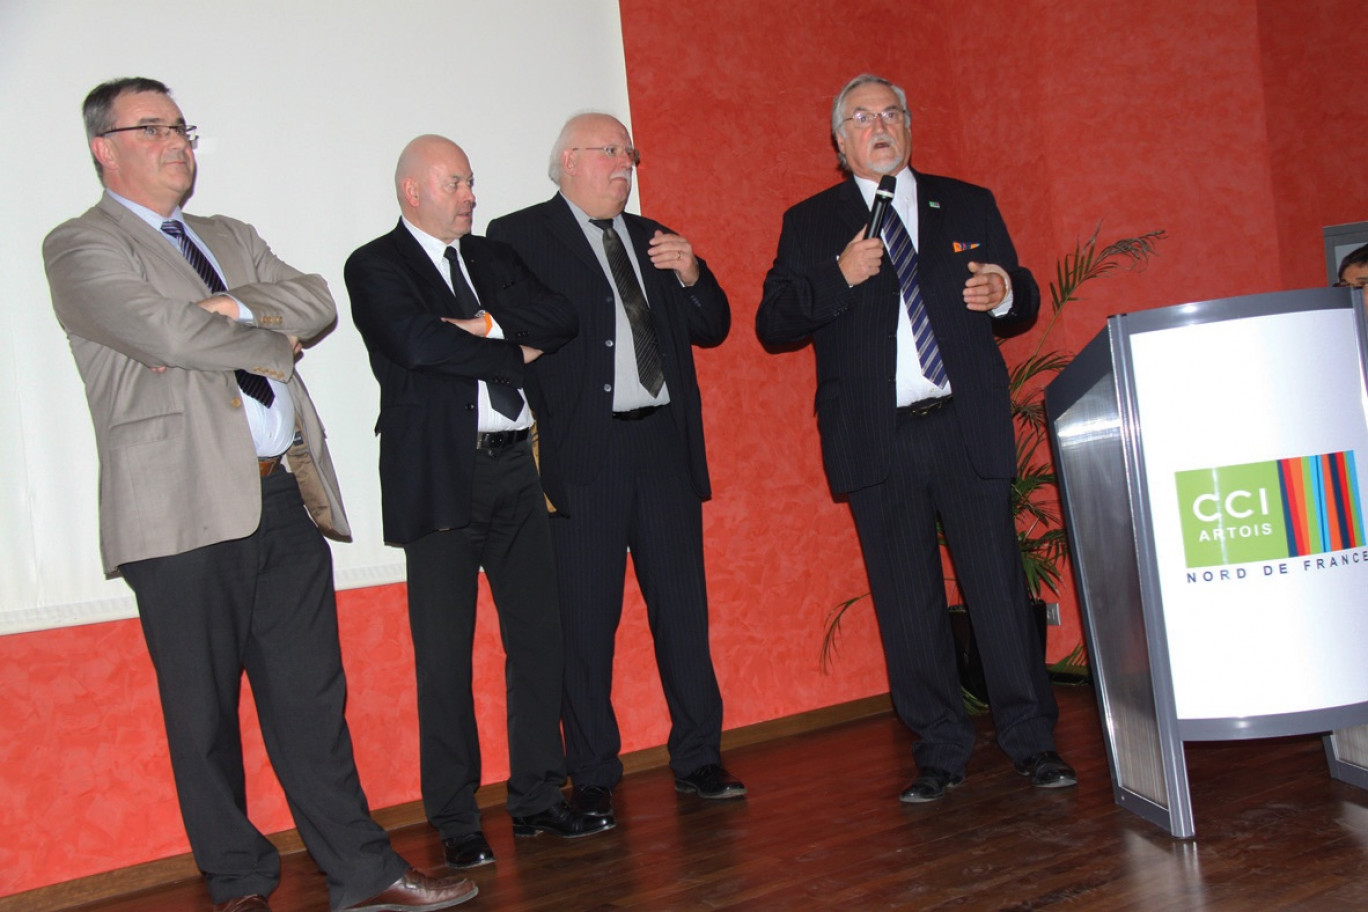 De gauche à droite, les trois vice-présidents, Jean-Marc Devise (Arras), Alain Cuise (Béthune), Patrick Leleu (Lens), et le président Edouard Magnaval.